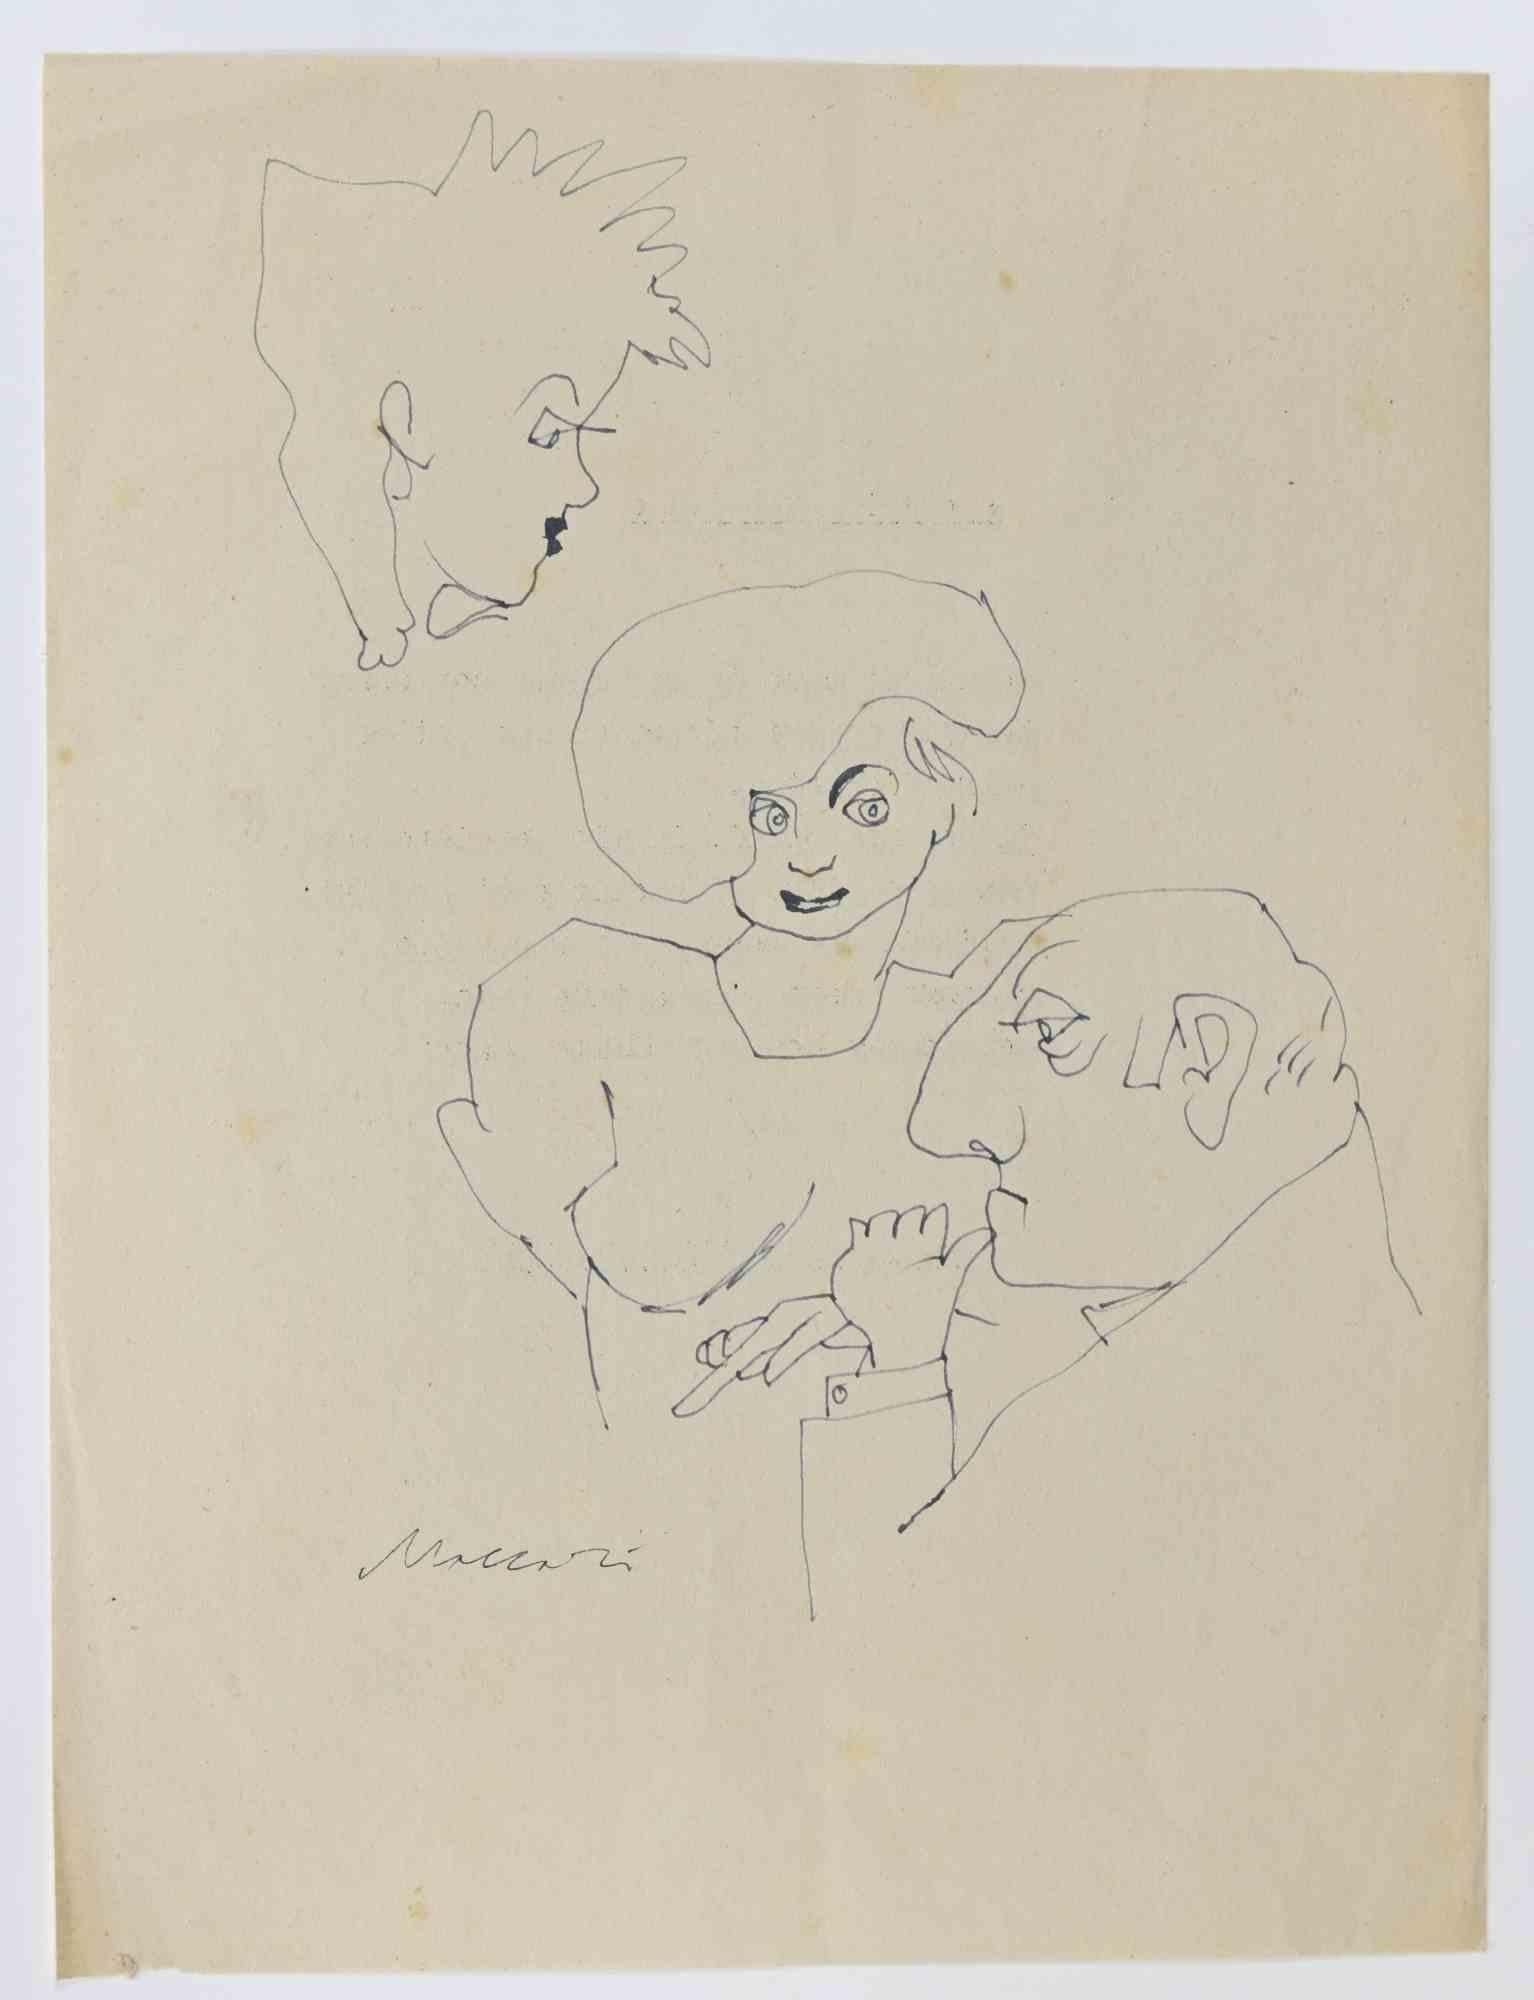 Figures est un dessin à la plume réalisé par Mino Maccari  (1924-1989) dans les années 1960.

Signé à la main en bas.

Bon état.

Mino Maccari (Sienne, 1924-Rome, 16 juin 1989) est un écrivain, peintre, graveur et journaliste italien, lauréat du